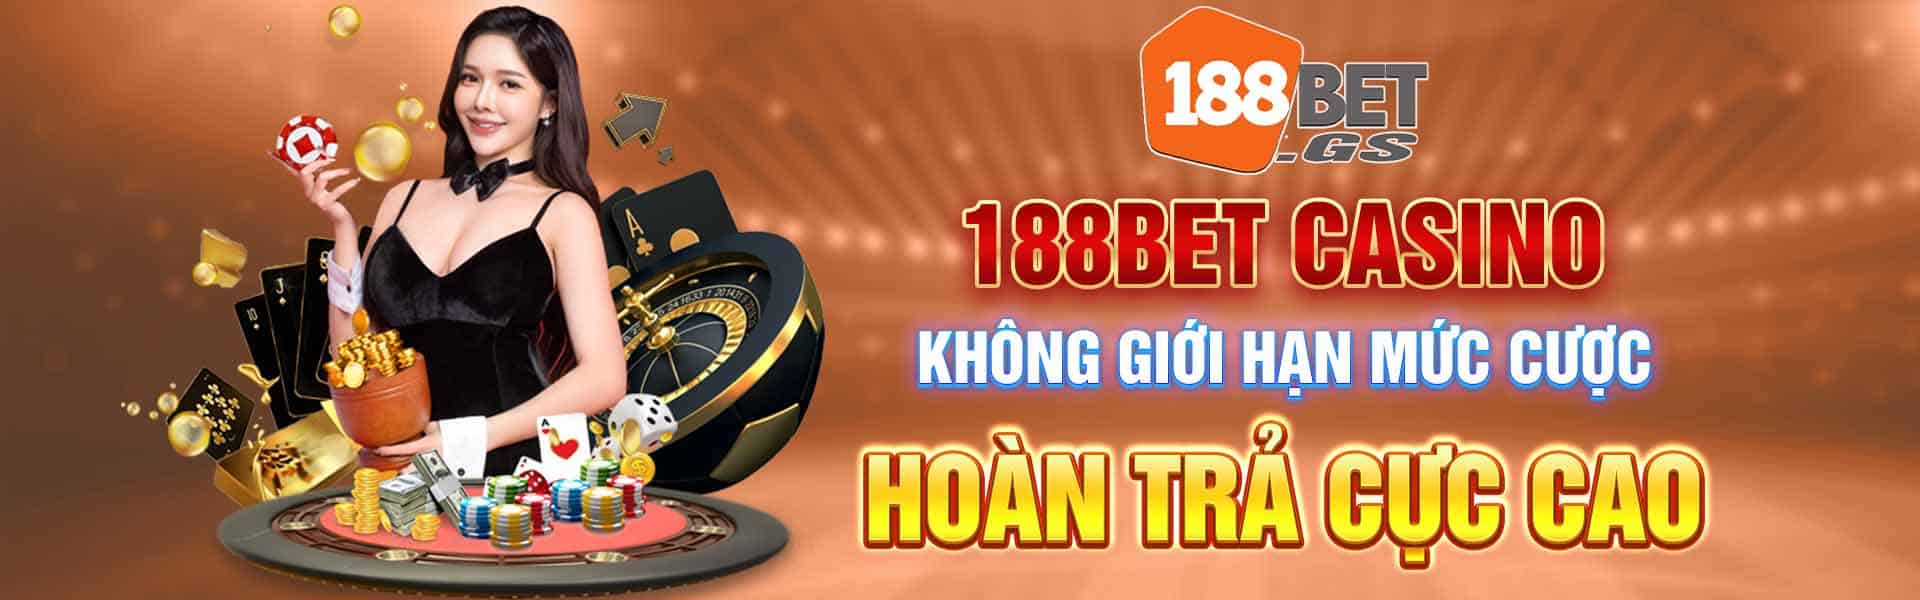 188bet-casino-khong-gioi-han-muc-cuoc-hoan-tra-cuc-cao